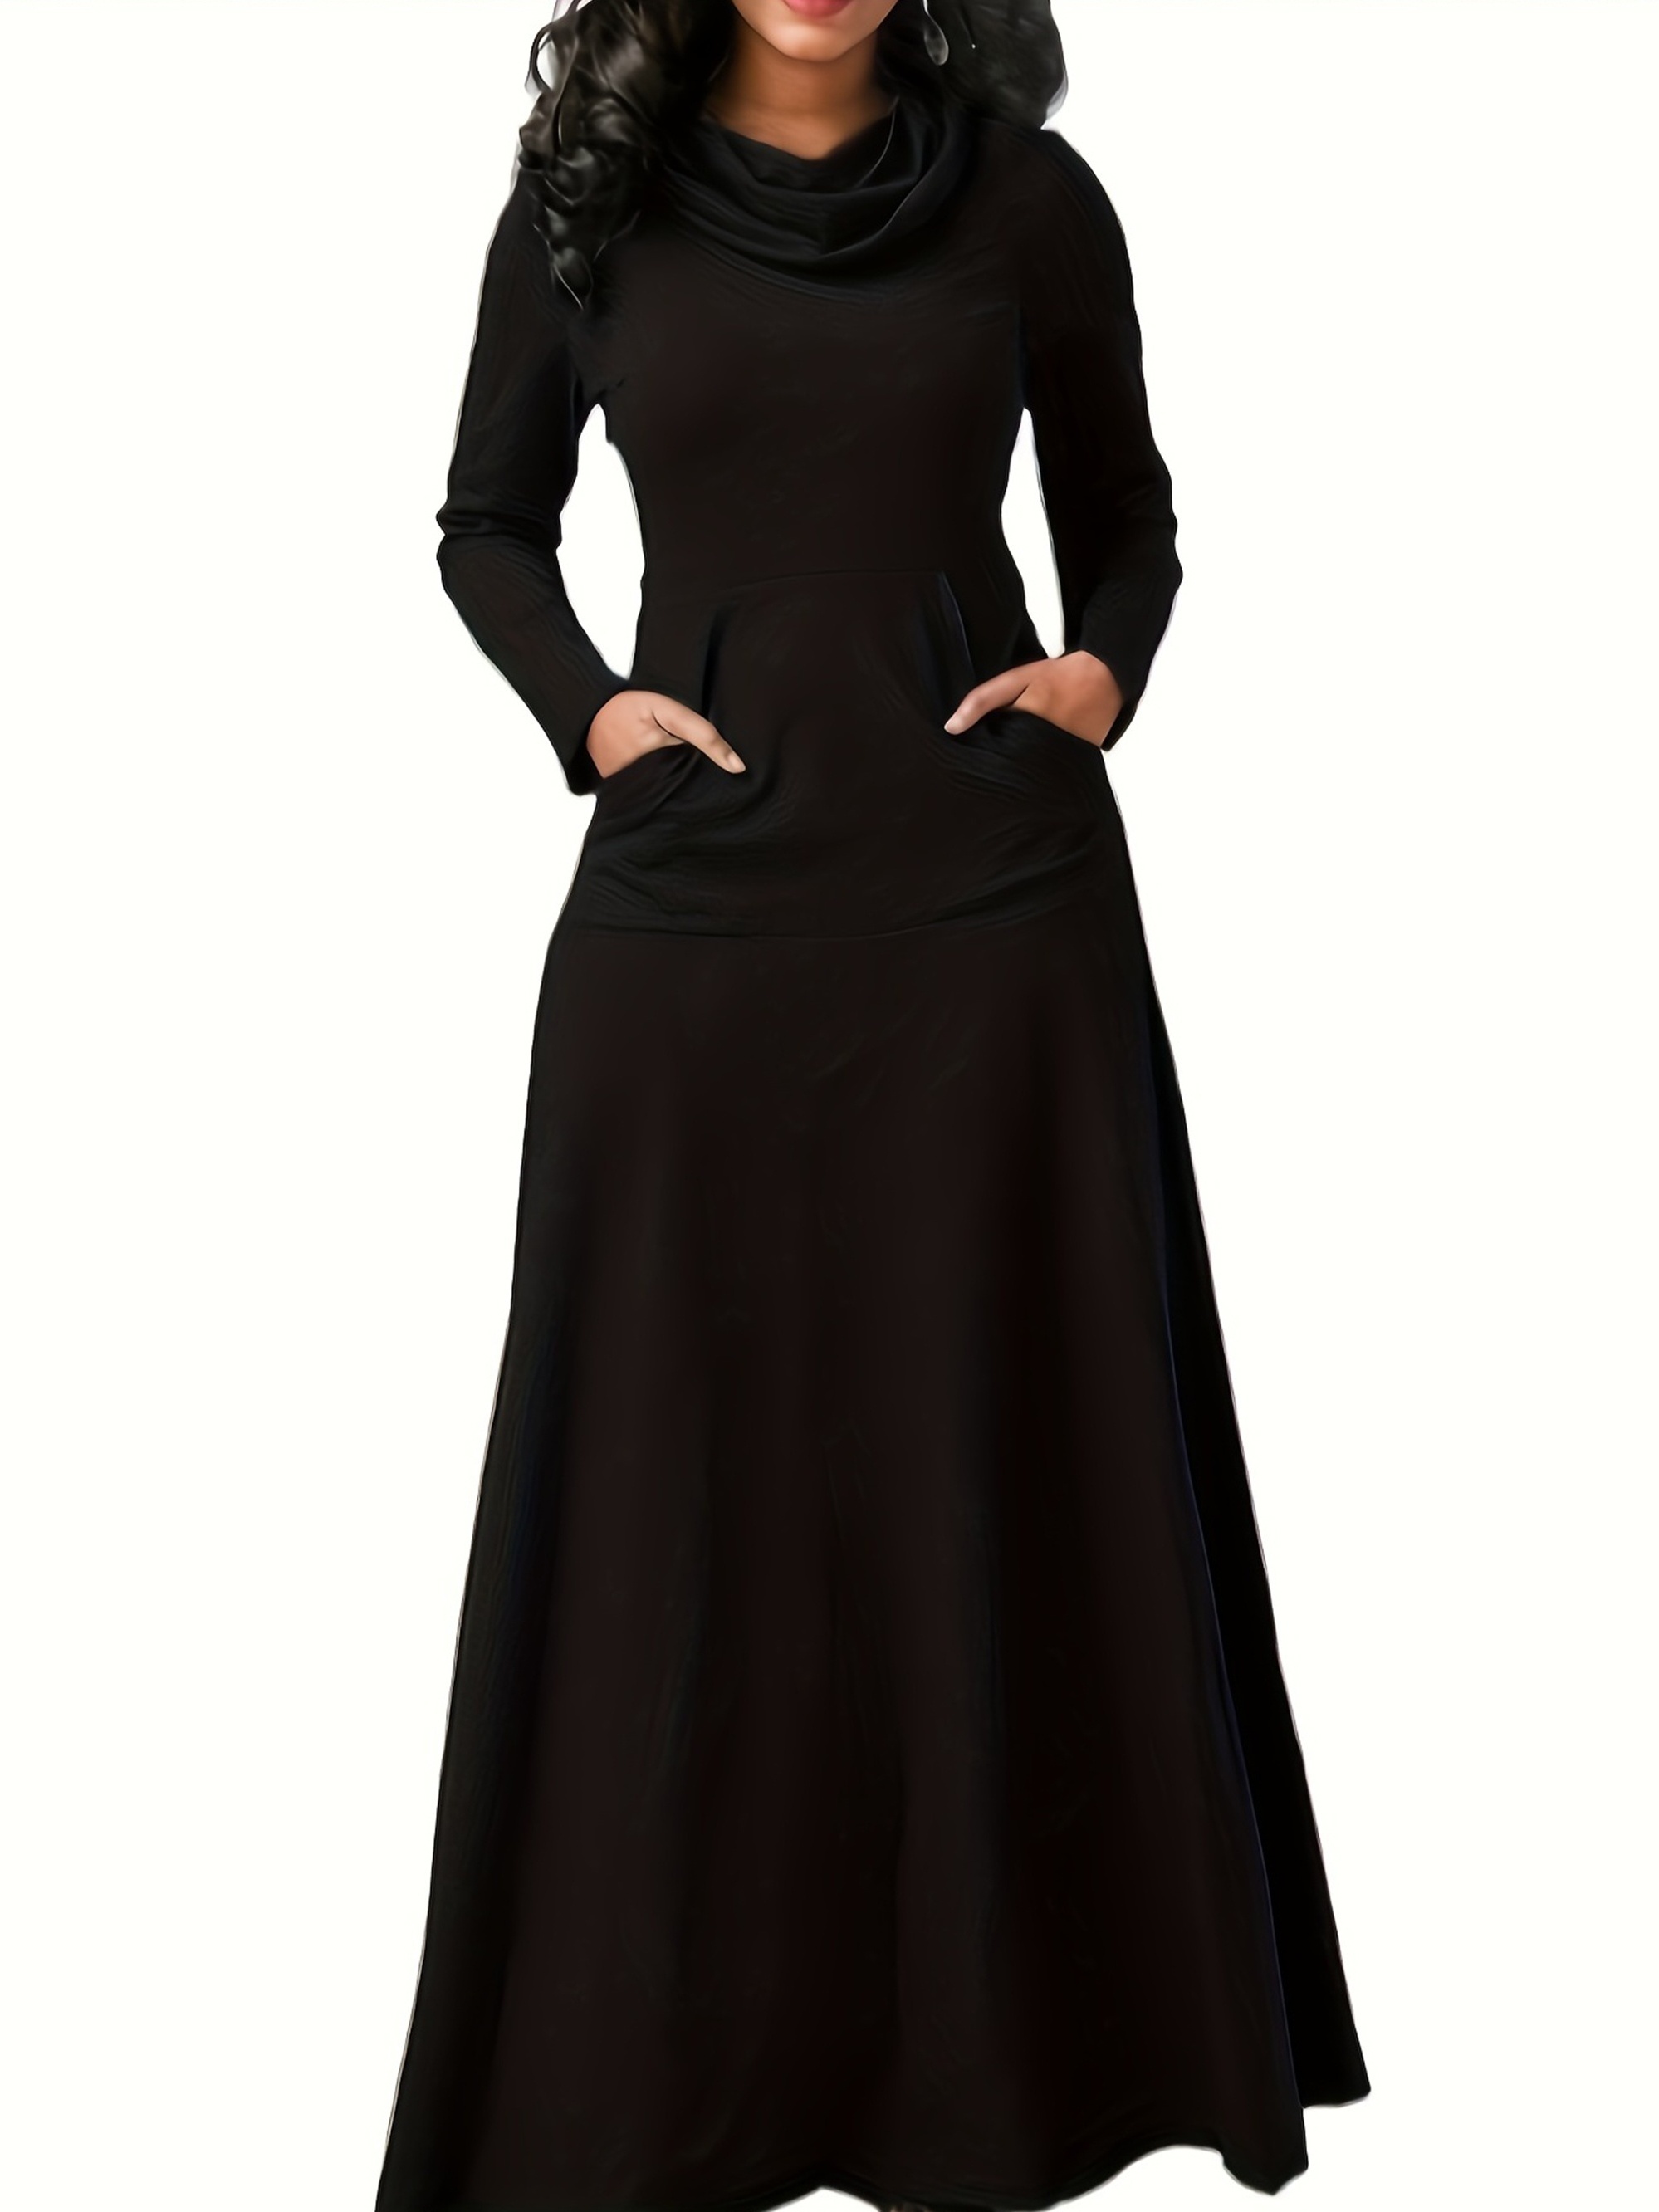 فستان كاجوال بمقاس كبير، فستان نسائي طويل الأكمام بياقة مدورة وقابل للتمدد مع جيوب